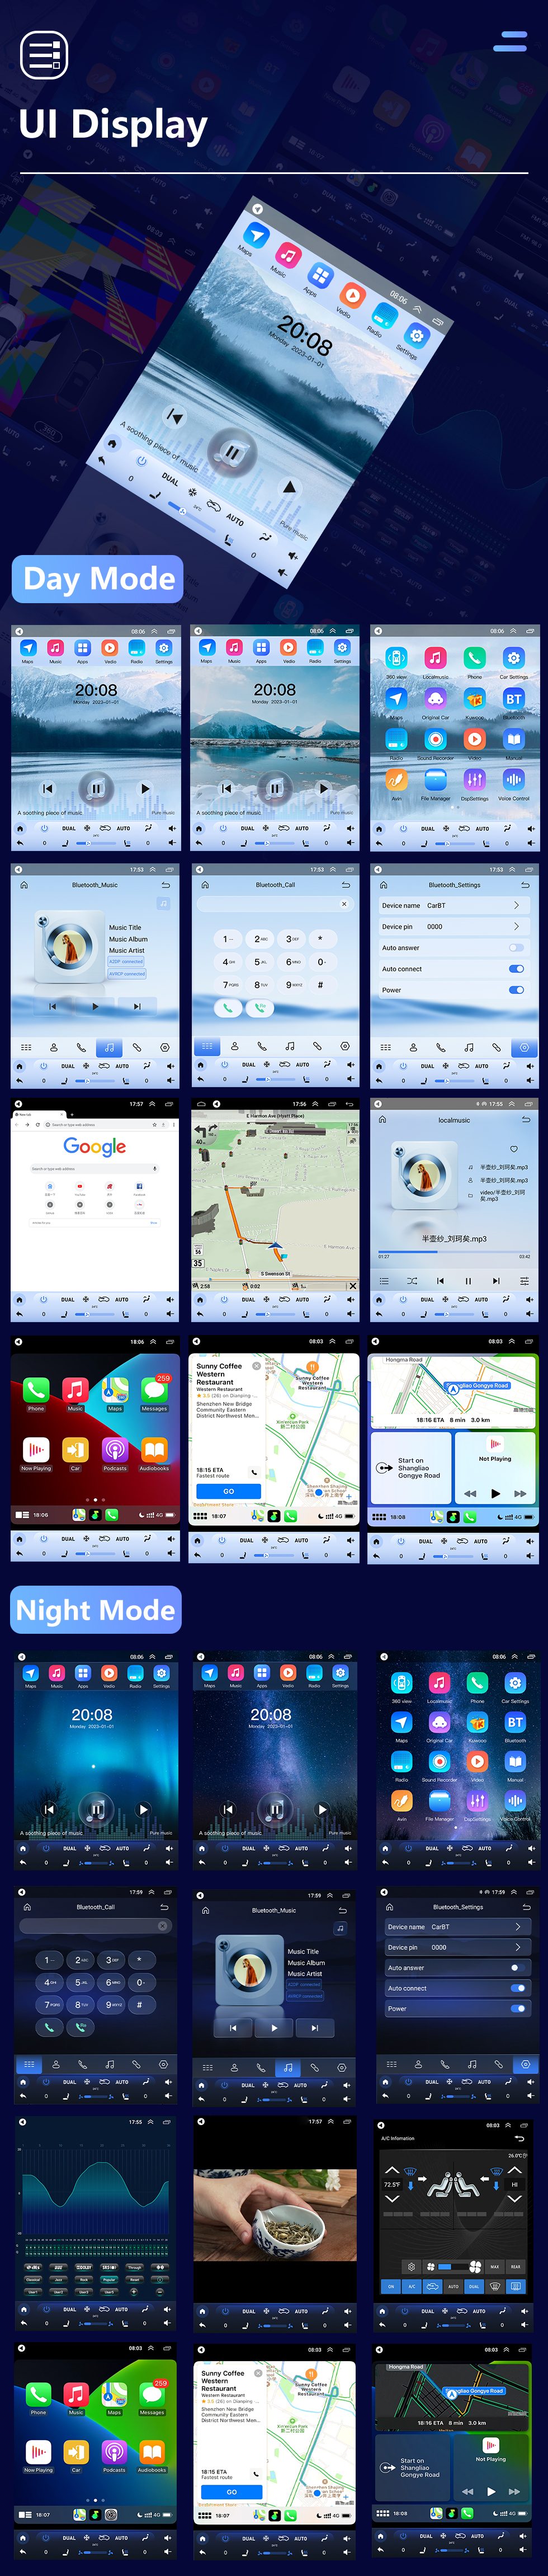 Seicane 9.7 pulgadas Android 10.0 para 2013-2017 Ford Ecosport Radio Sistema de navegación GPS con Bluetooth HD Pantalla táctil Carplay compatible con cámara de 360 °